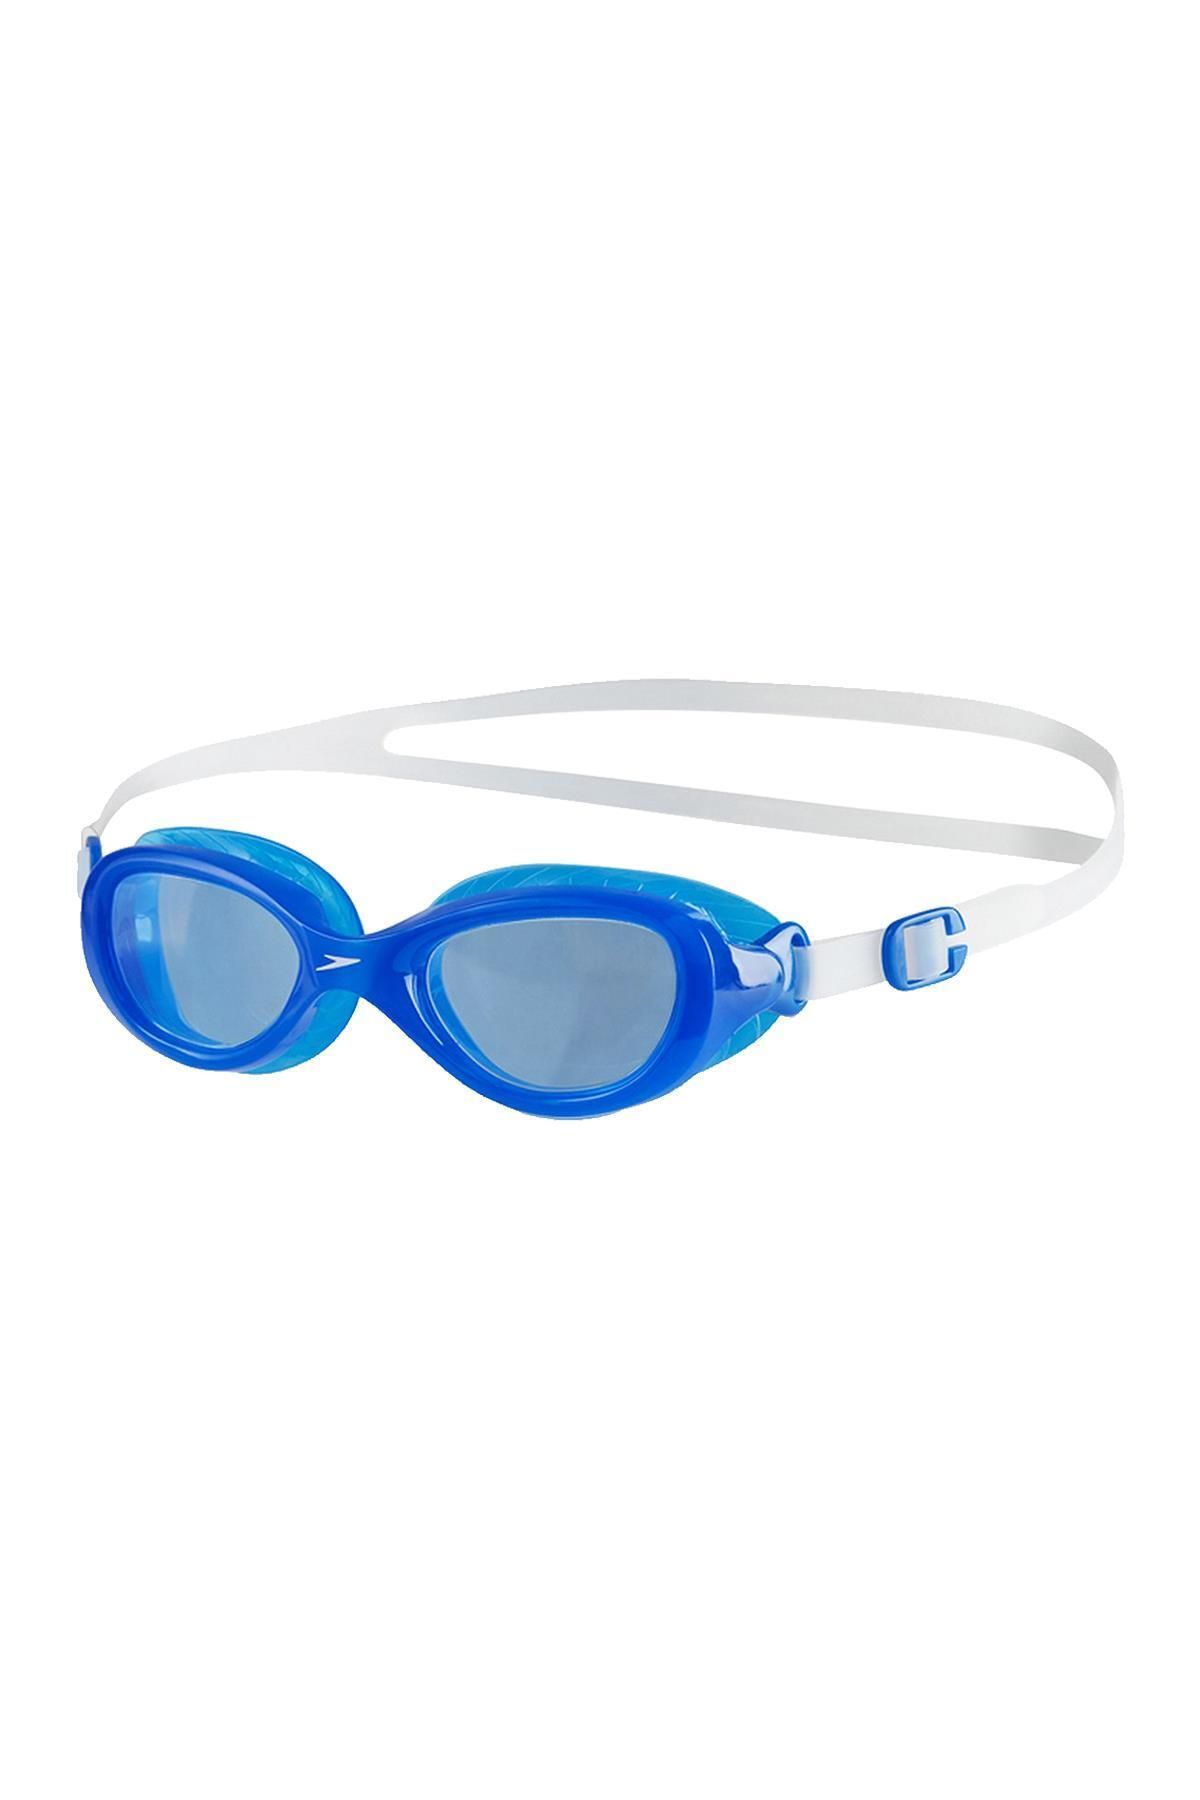 SPEEDO 8-10900b - Futura Classic Junior Yüzücü Gözlüğü